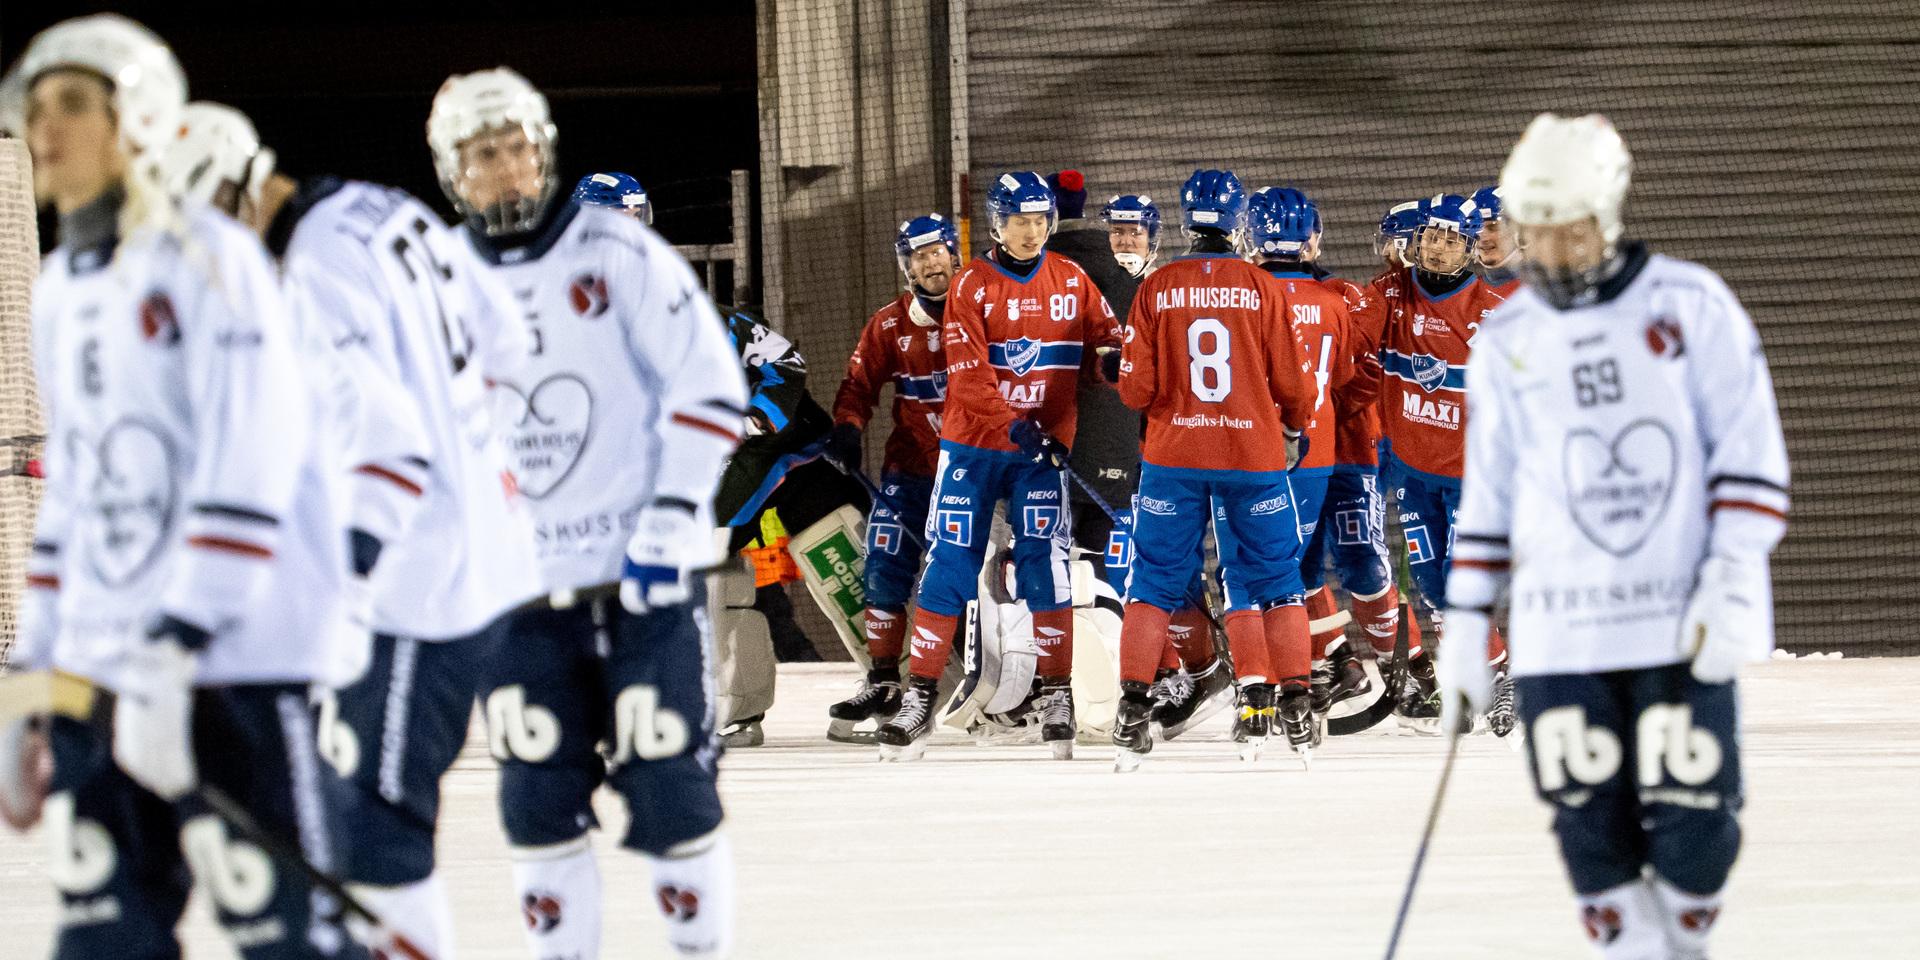 Jubel i IFK Kungälv. Det blev 9–3 mot Katrineholm.